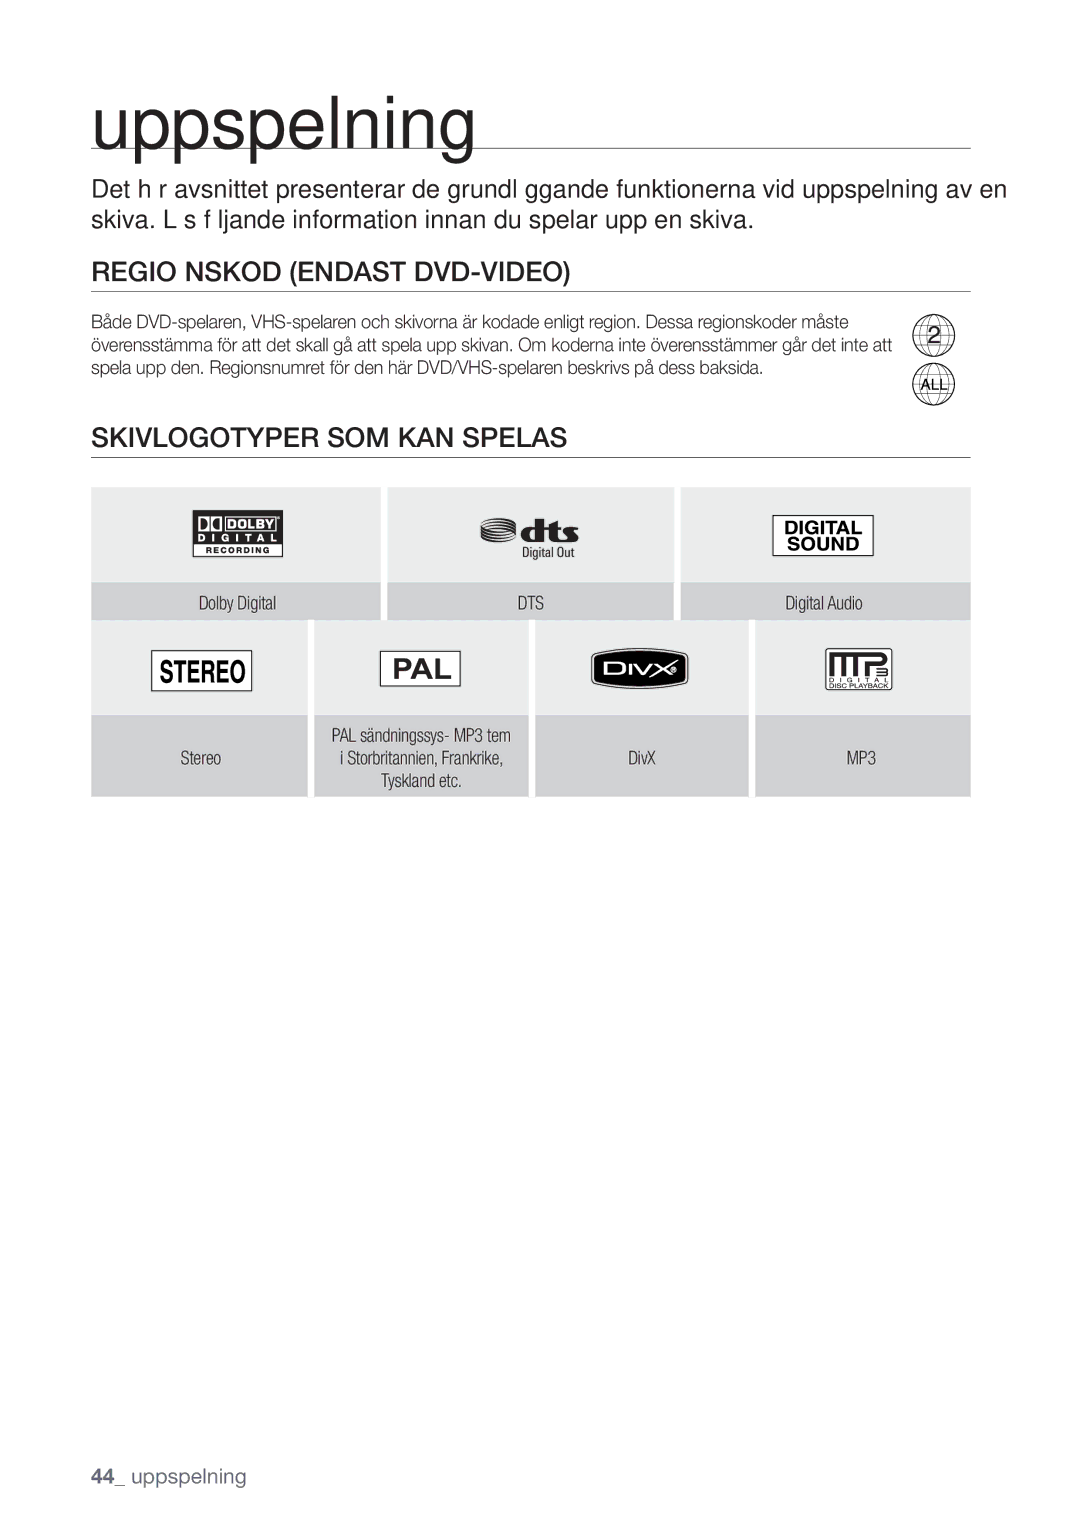 Samsung DVD-VR375/XEE, DVD-VR370/XEE manual Regio Nskod Endast DVD-VIDEO, Skivlogotyper SOM KAN Spelas, Dts, MP3 